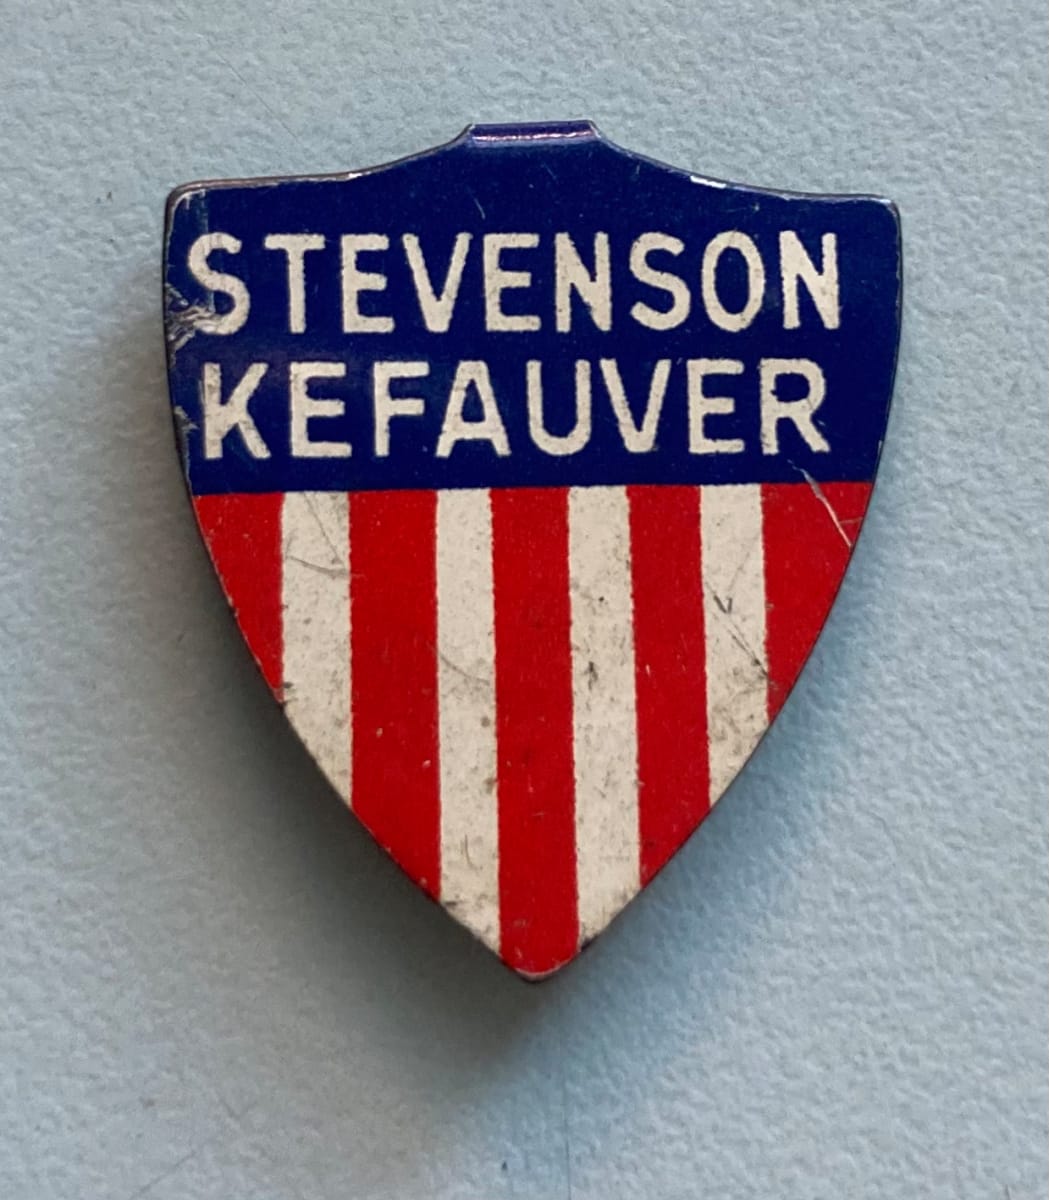 Adlai Stevenson/Estes Kefauver Campaign Button by political campaign 